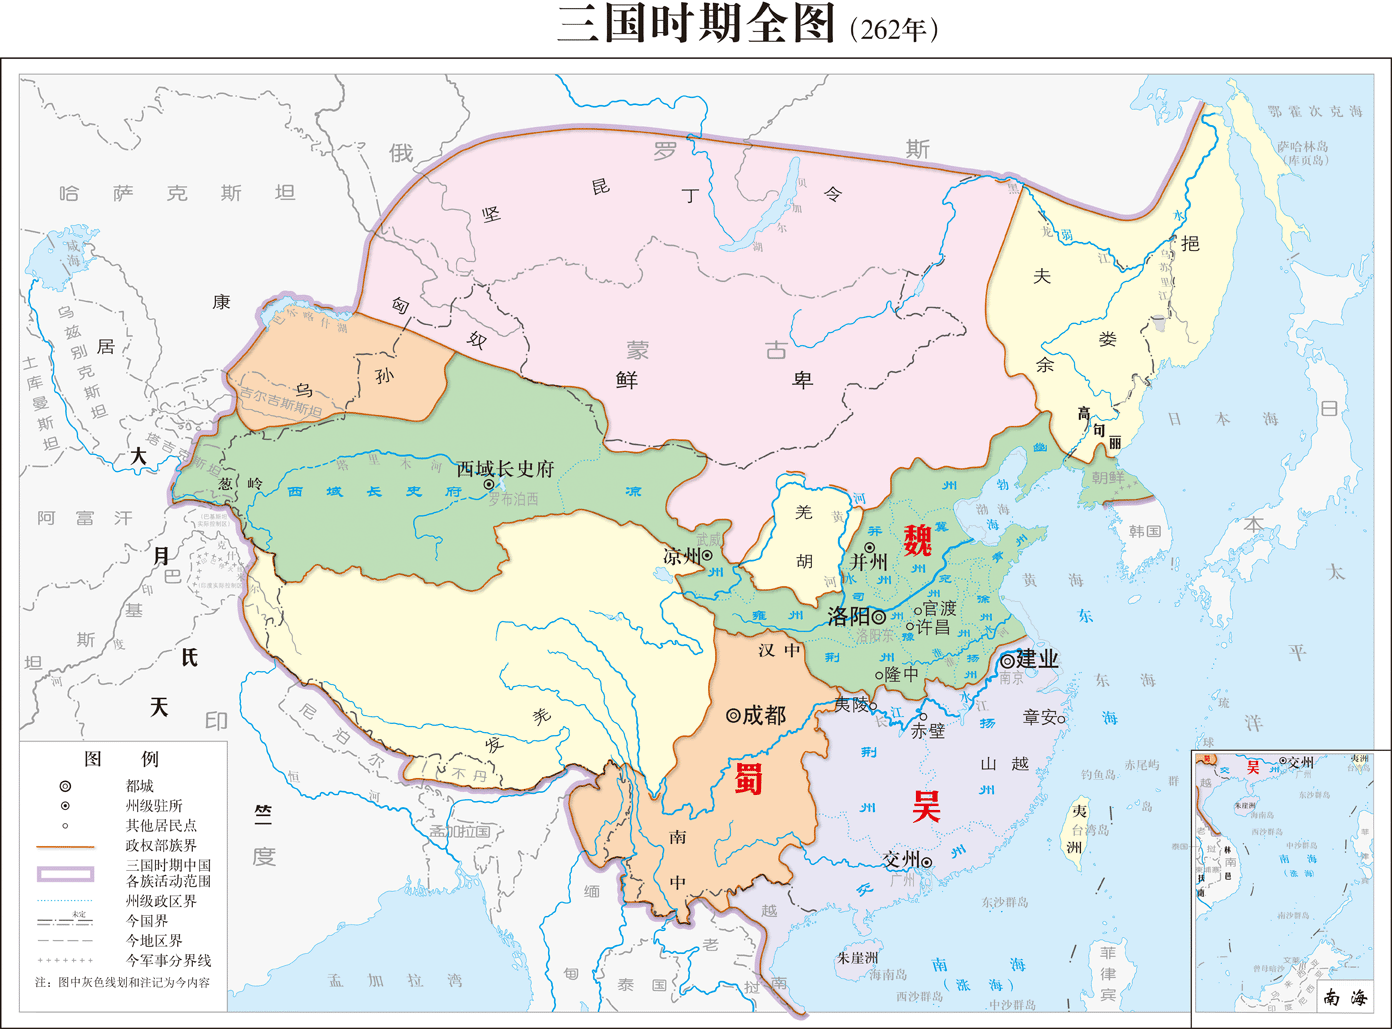 别被历史地图骗了:谭其骧主编的《中国历史地图集 》错误举例